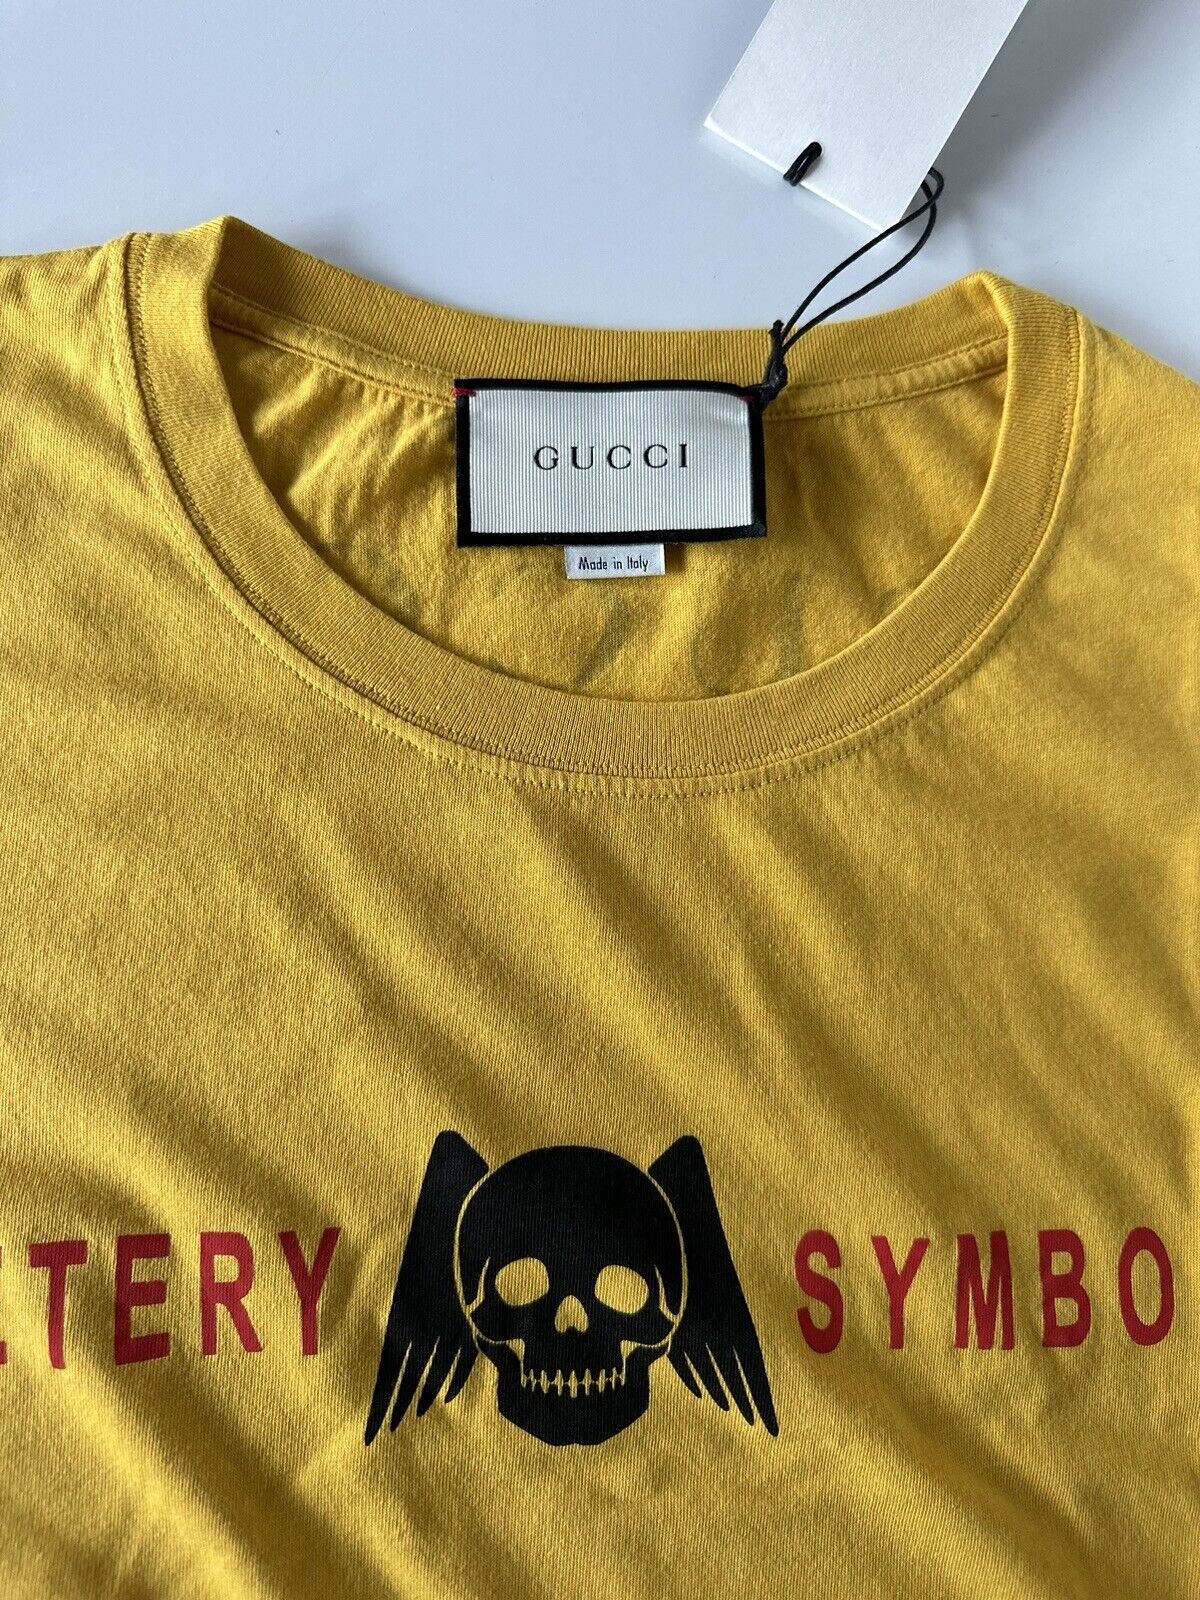 Желтая футболка из хлопкового трикотажа NWT Gucci Cemetery Symbolism L 493117 Сделано в Италии